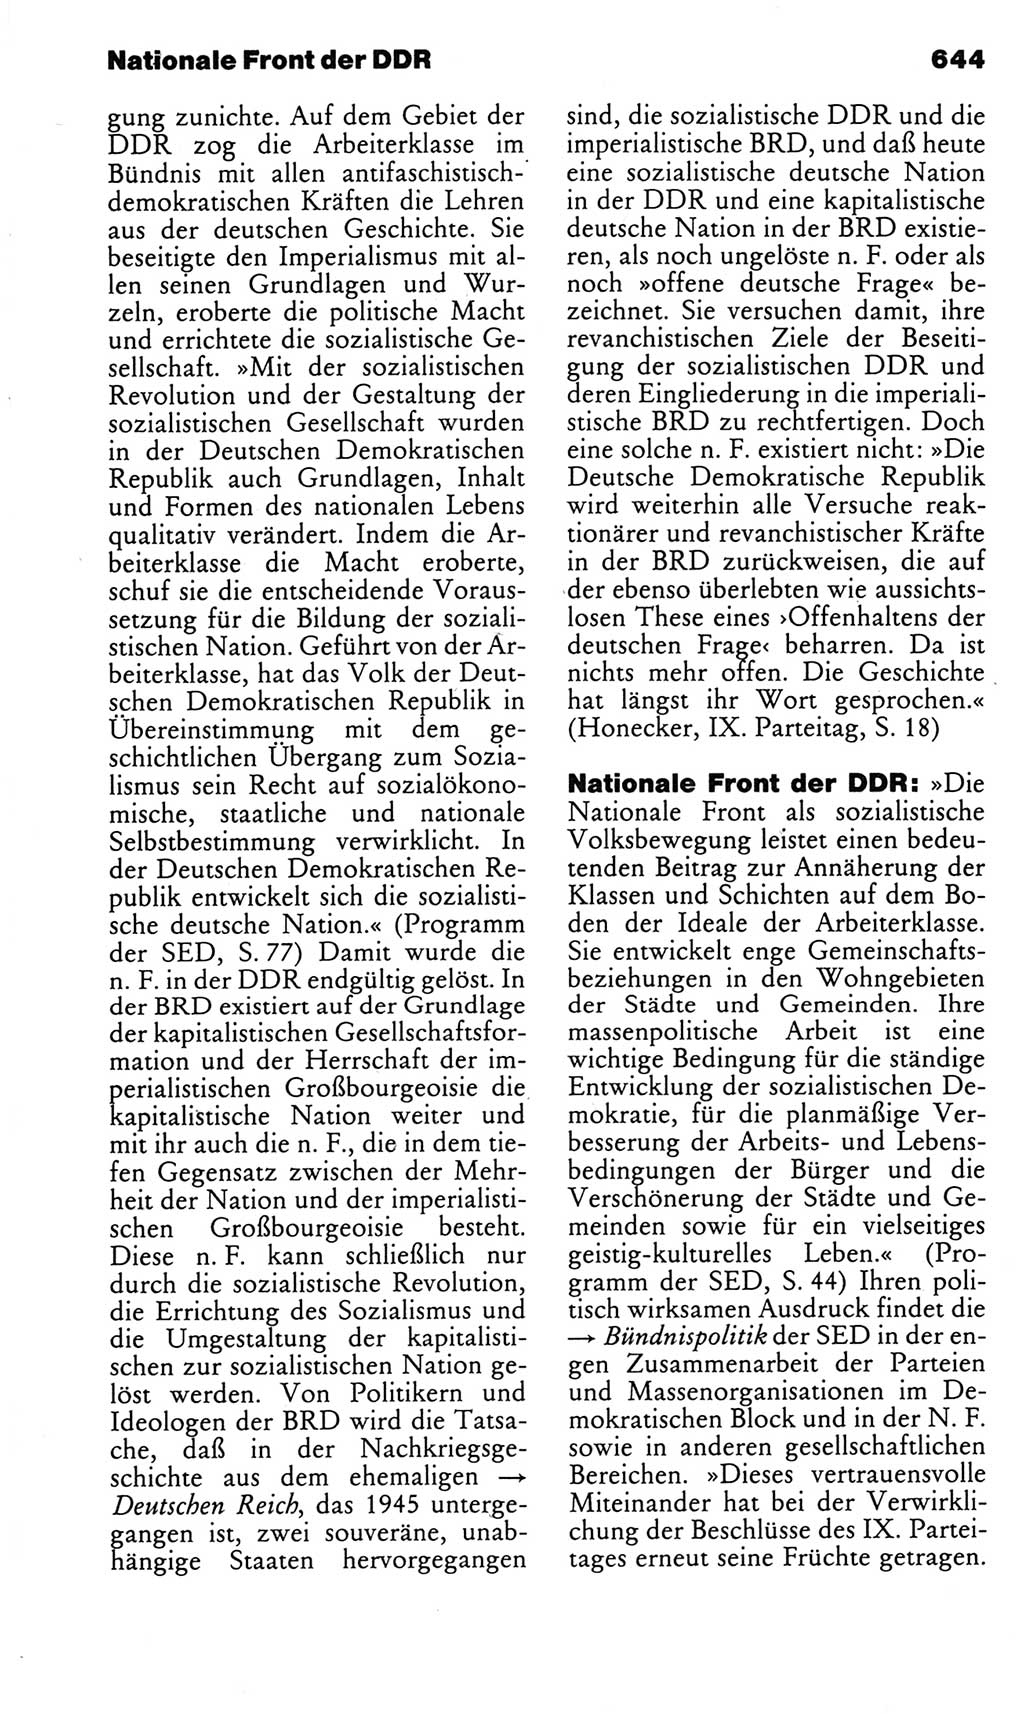 Kleines politisches Wörterbuch [Deutsche Demokratische Republik (DDR)] 1983, Seite 644 (Kl. pol. Wb. DDR 1983, S. 644)